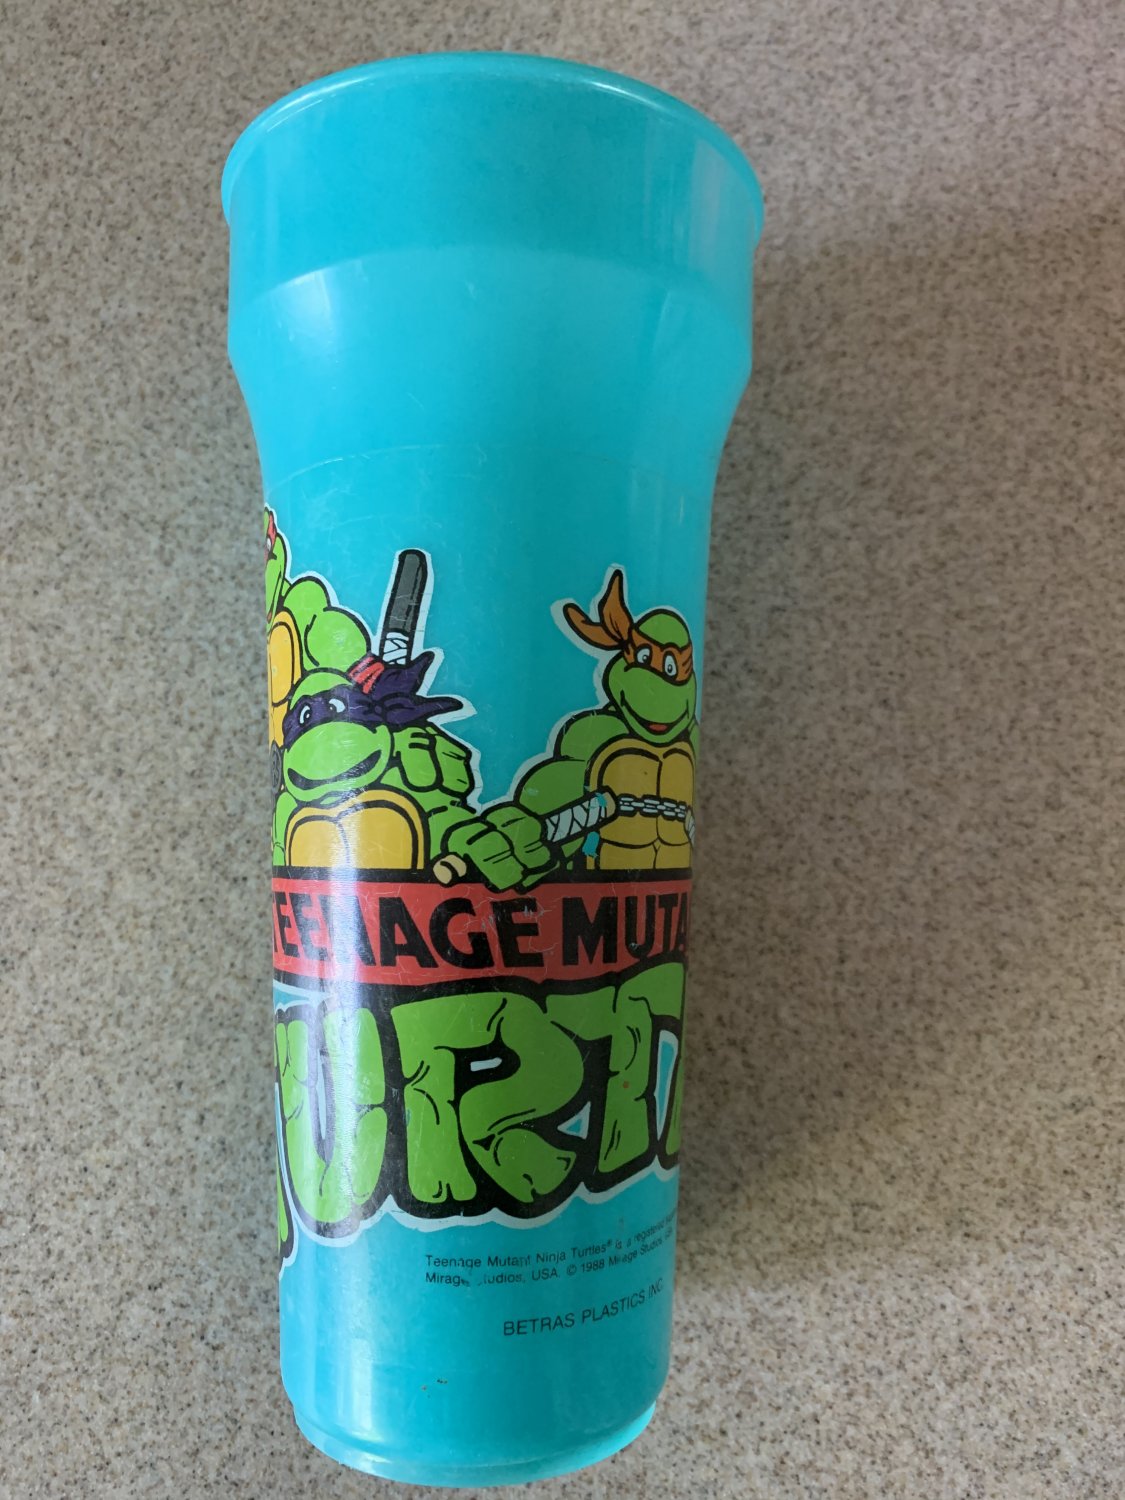 Teenage Mutant Ninja Turtles Vintage Large Cup (1988) Betras Plastics, TMNT